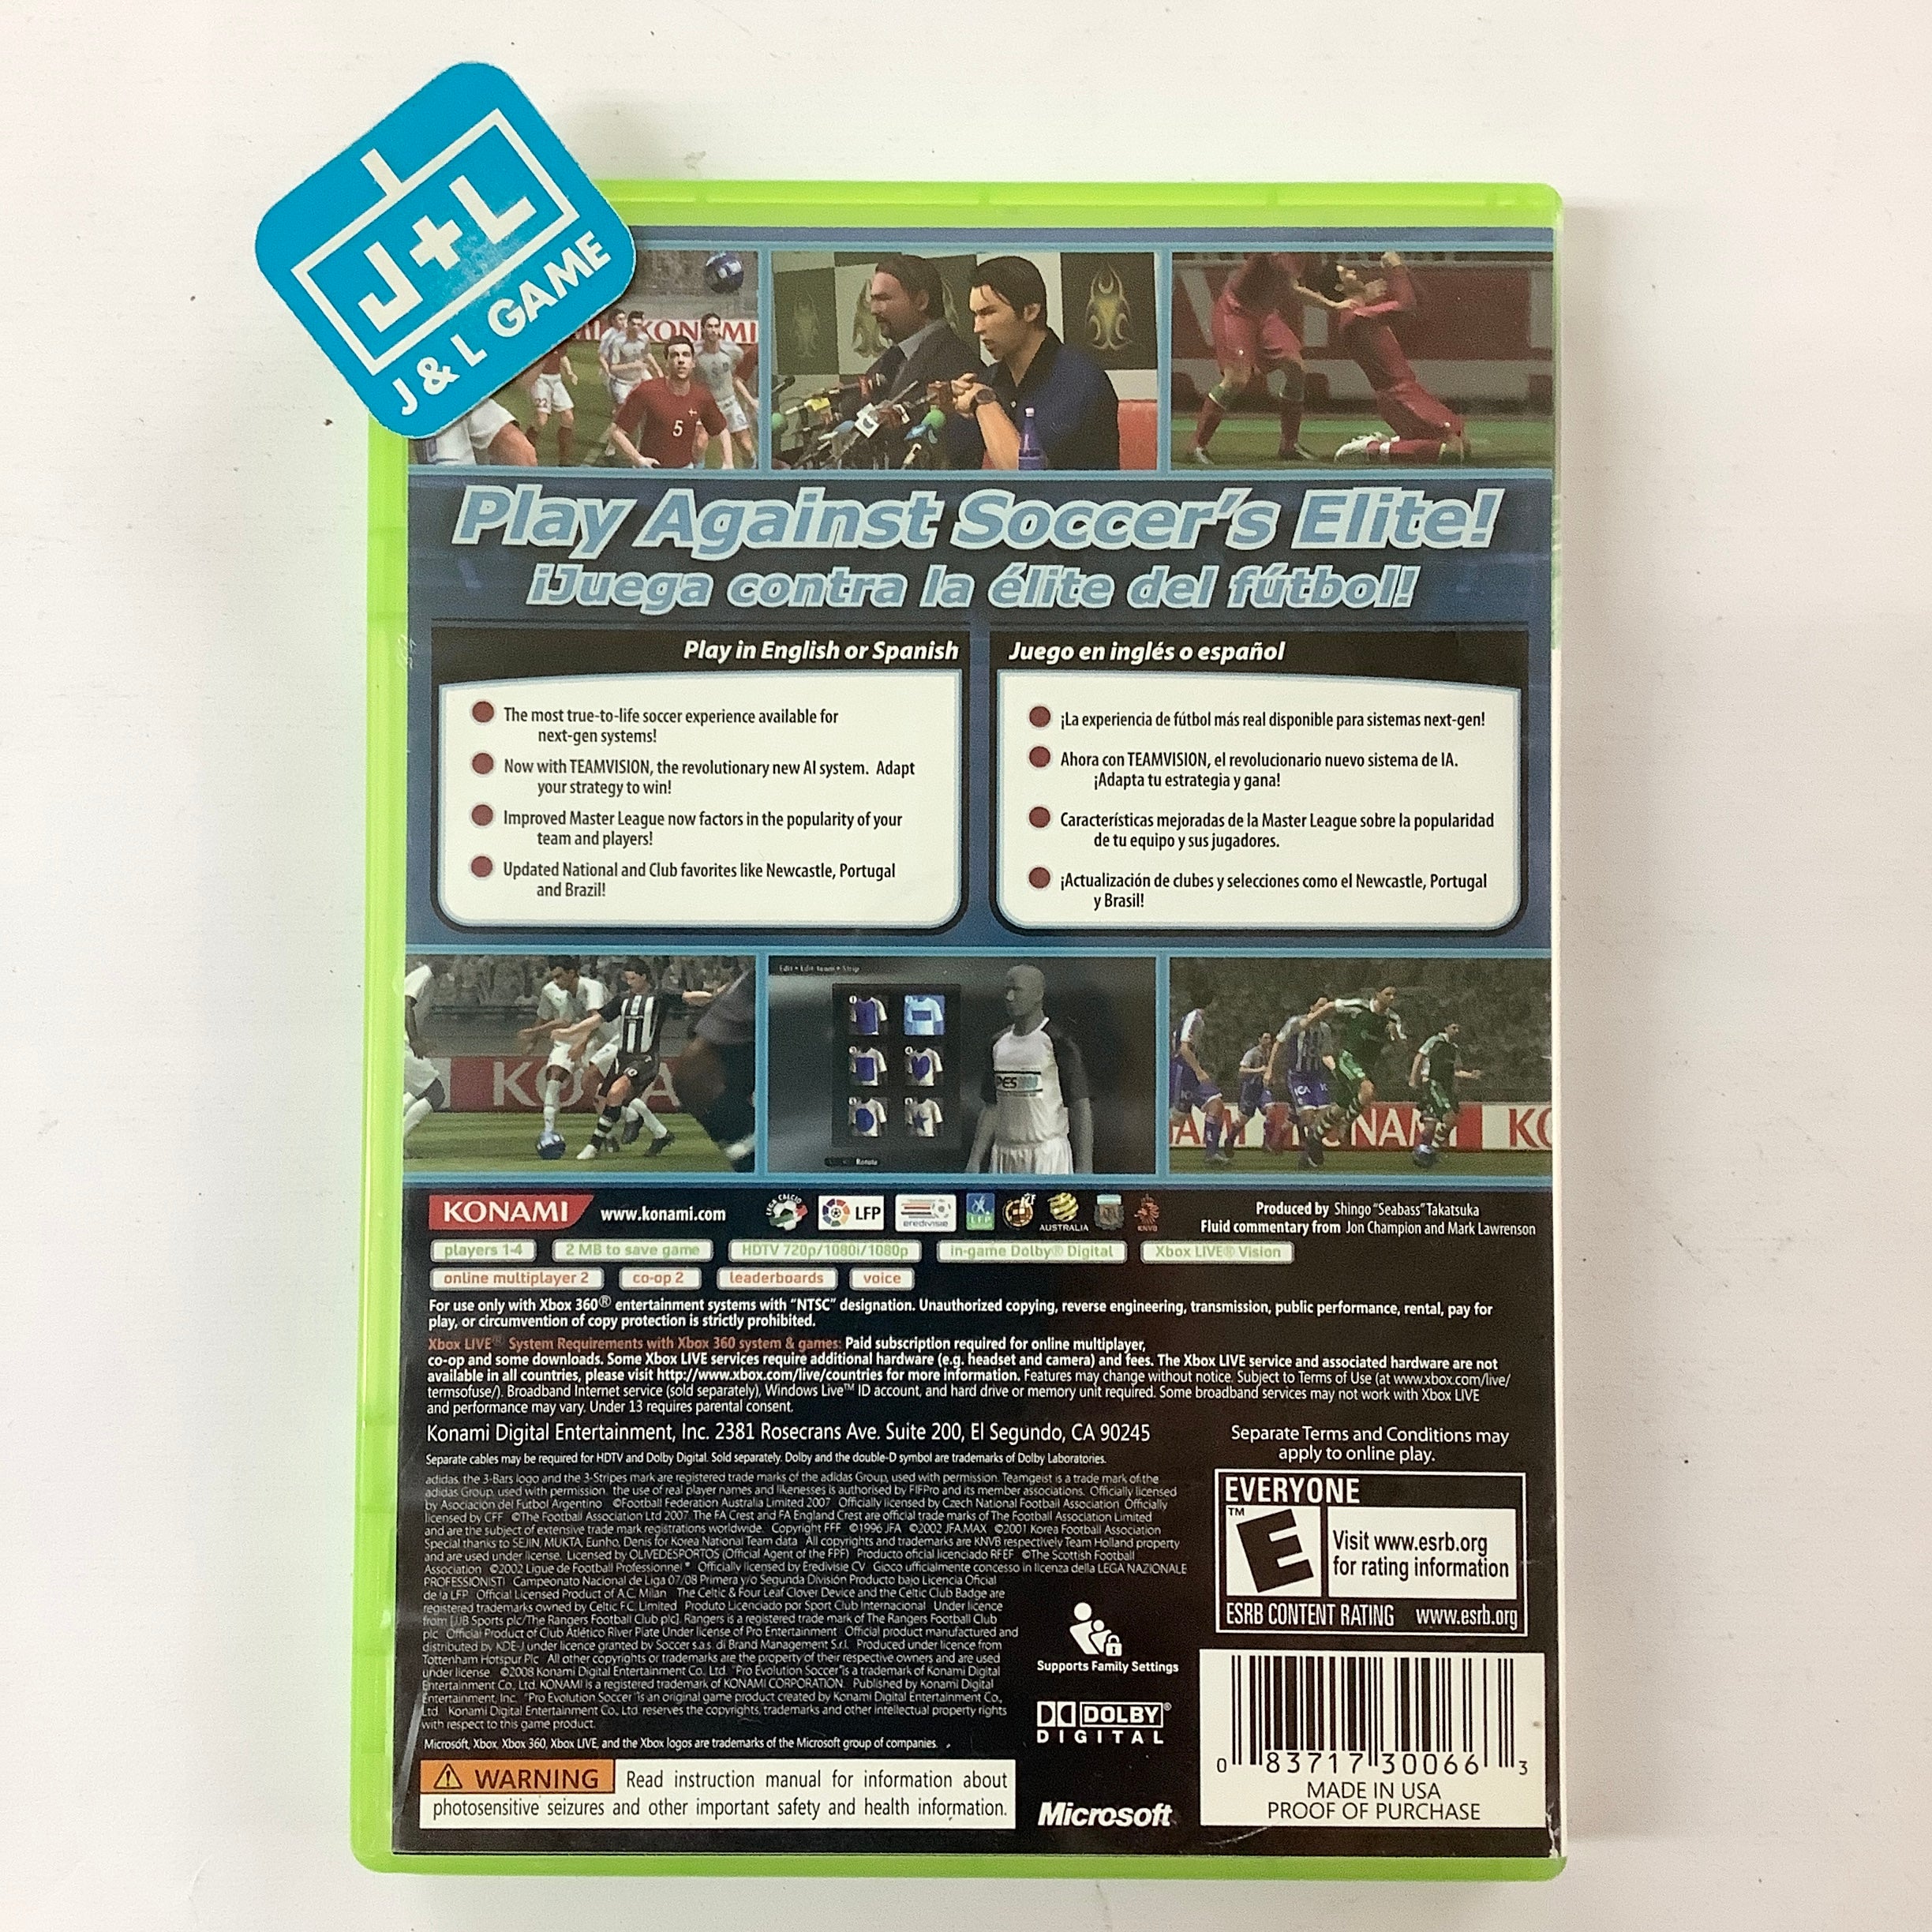 Pro Evolution Soccer 2008 - Xbox 360 [Pre-Owned] Video Games Konami   